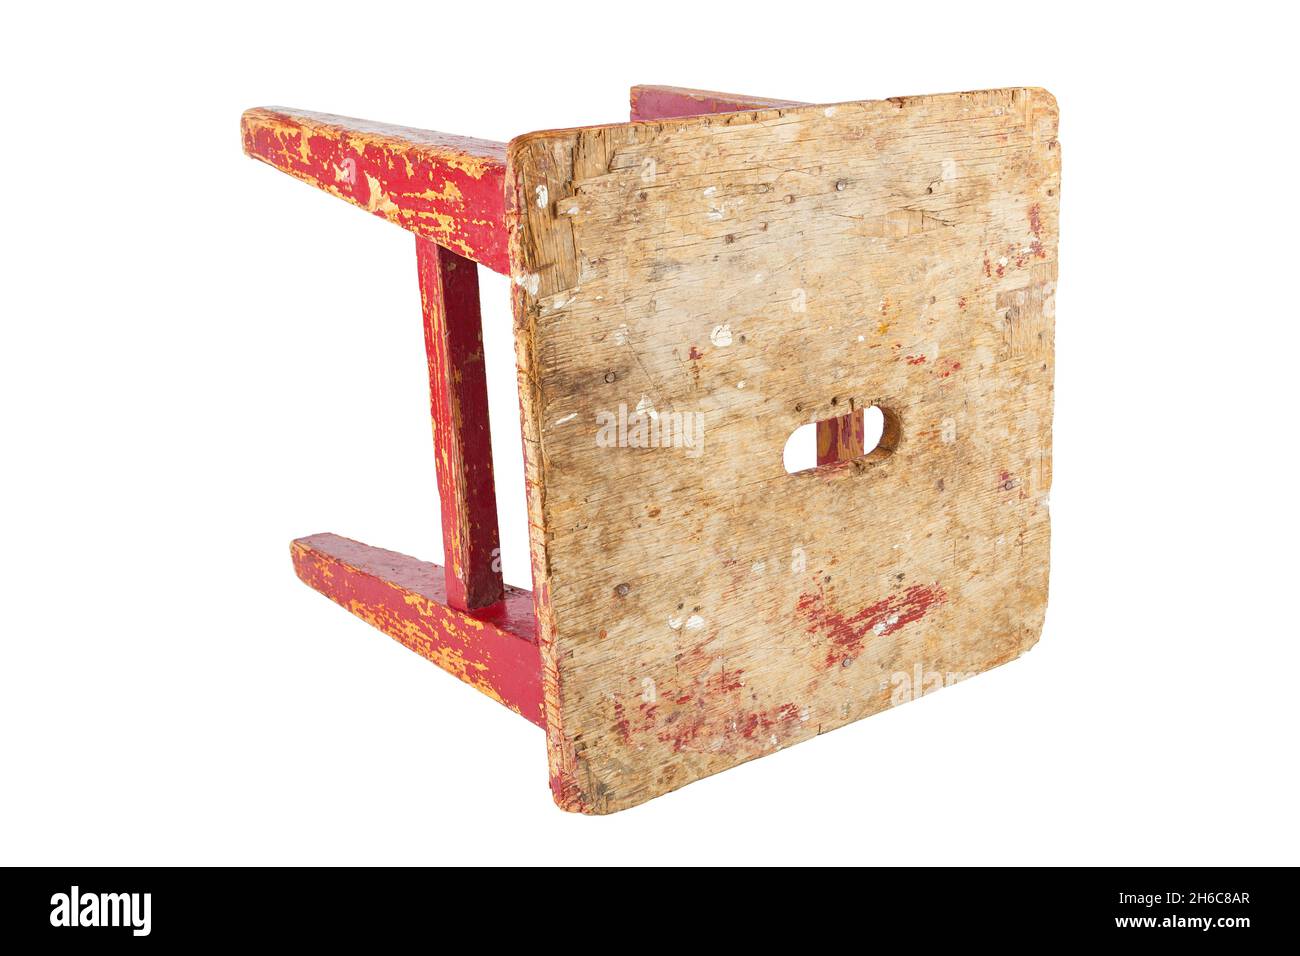 Vieux tabouret en bois avec peinture rouge qui s'écaille.Chaise de style loft isolée sur fond blanc. Banque D'Images